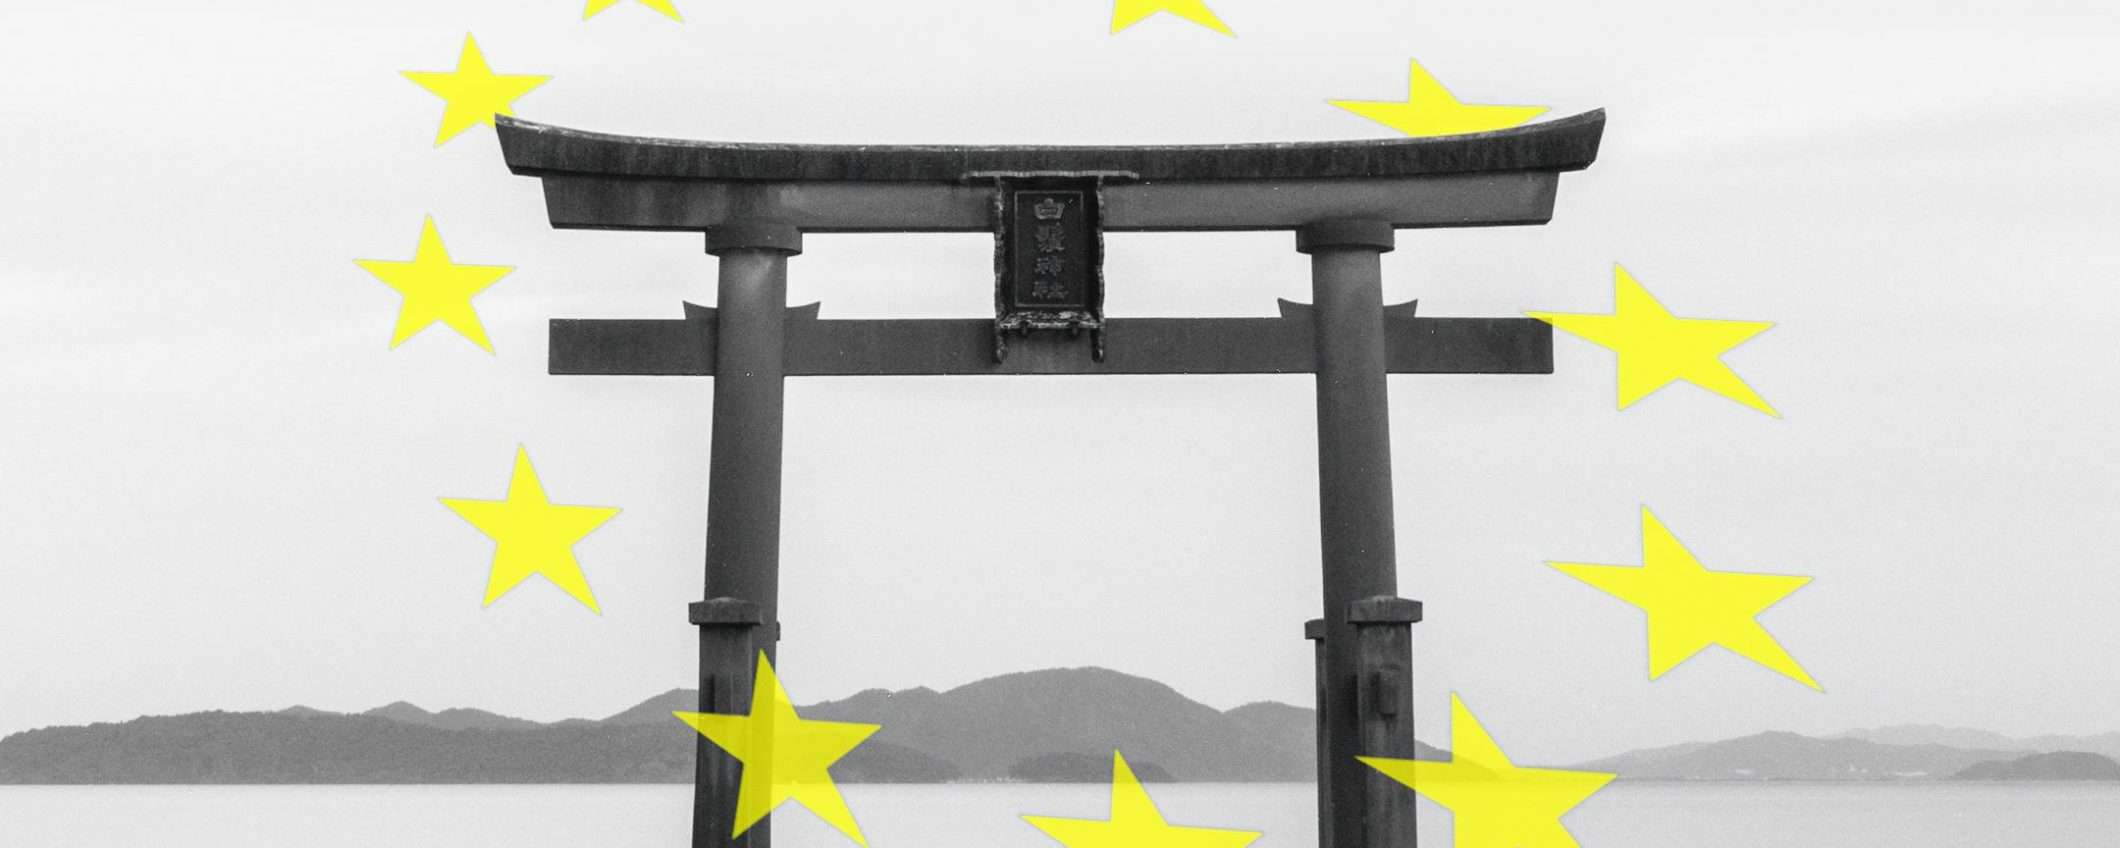 Europa e Giappone, merci e dati senza confini